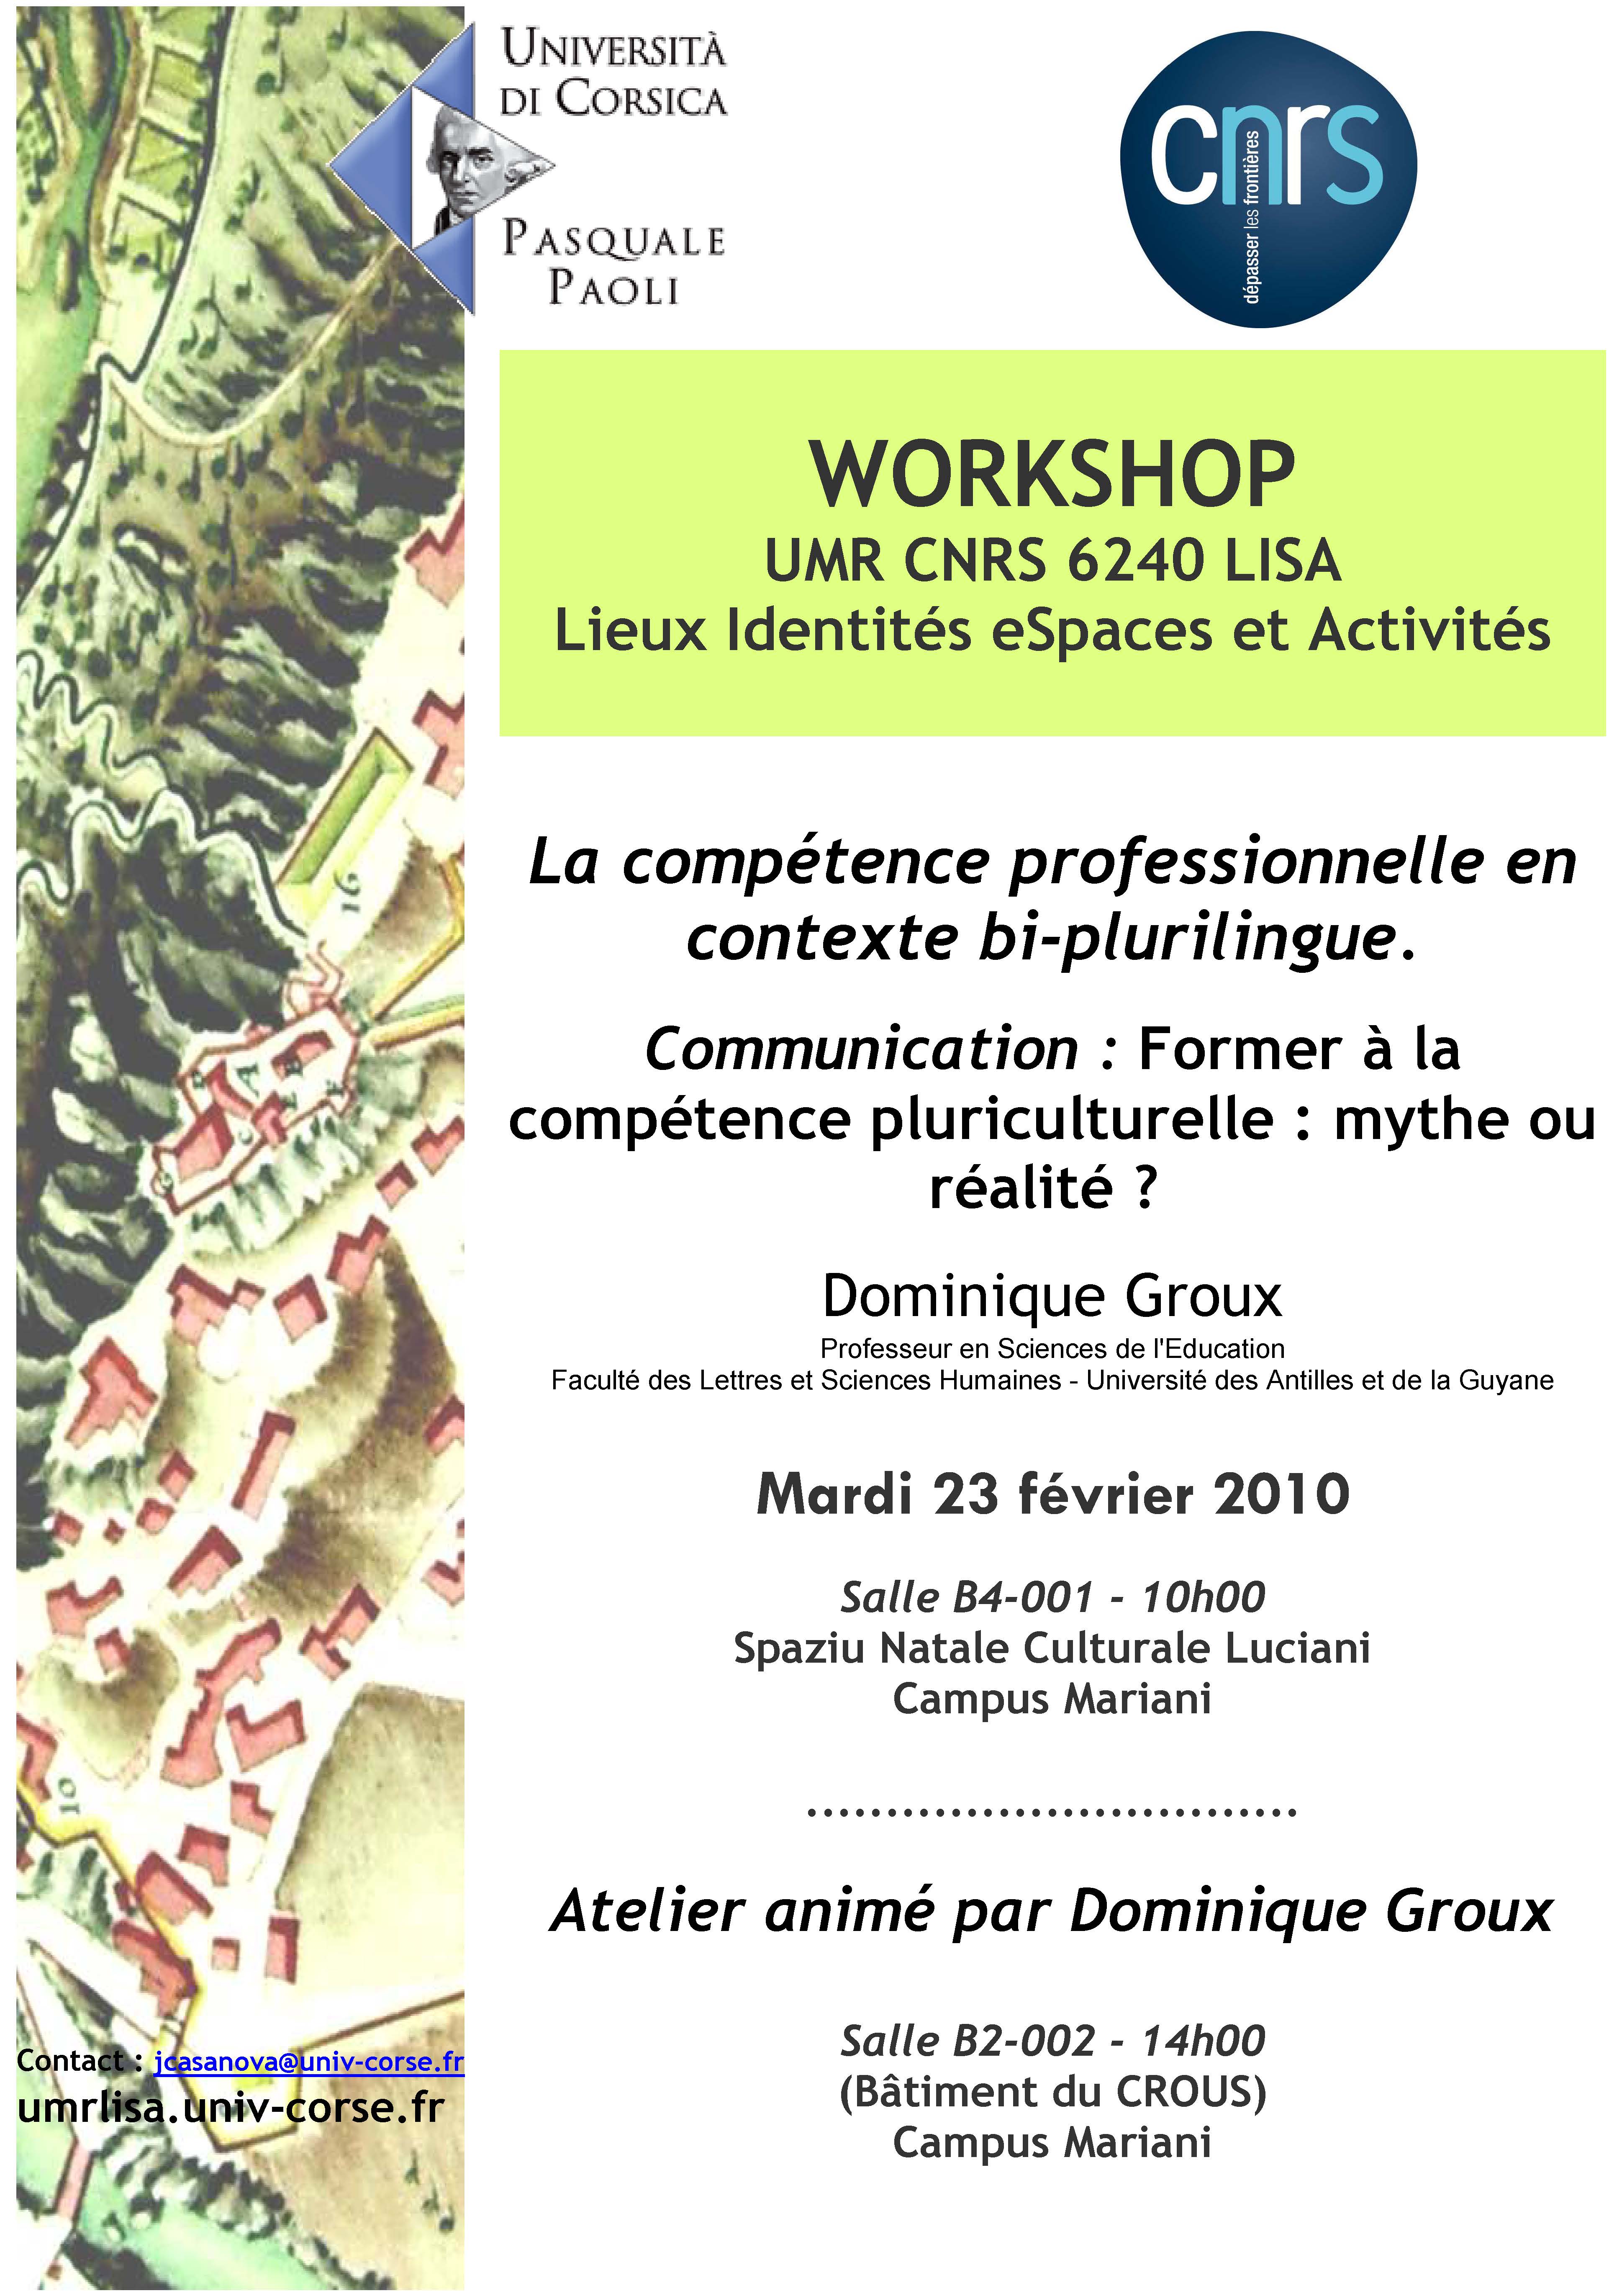 >Workshop Dominique Groux - La compétence professionnelle en contexte bi-plurilingue